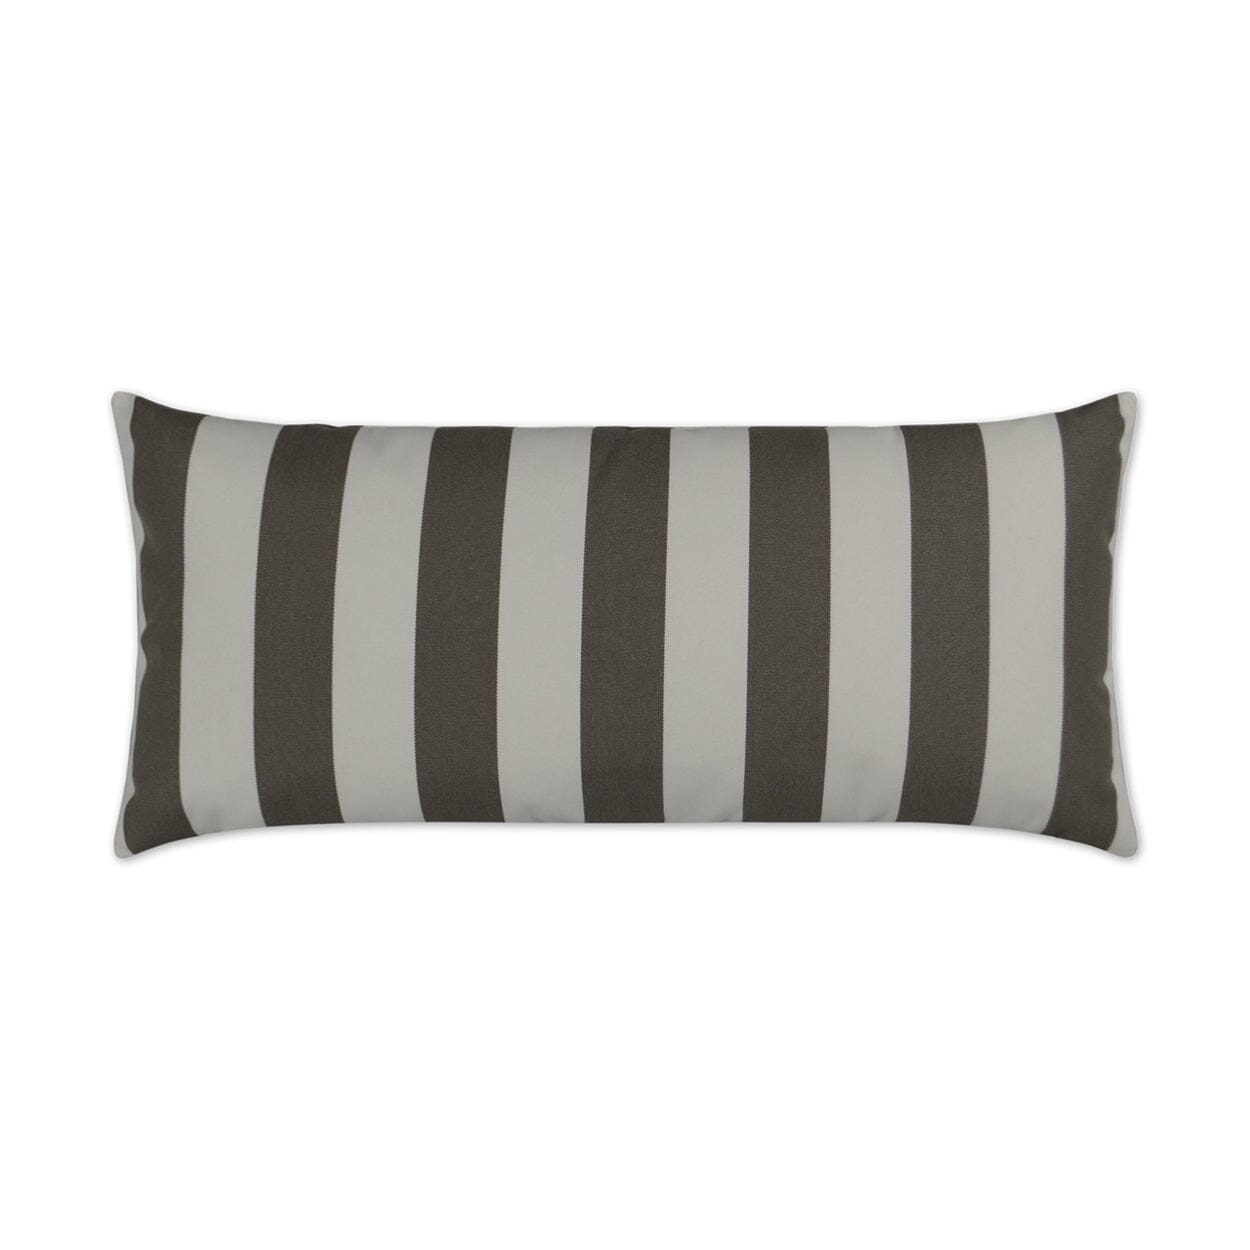 D.V. Kap 12" x 24" Outdoor Lumbar Pillow | Café Stripe Driftwood Pillows D.V Kap Outdoor